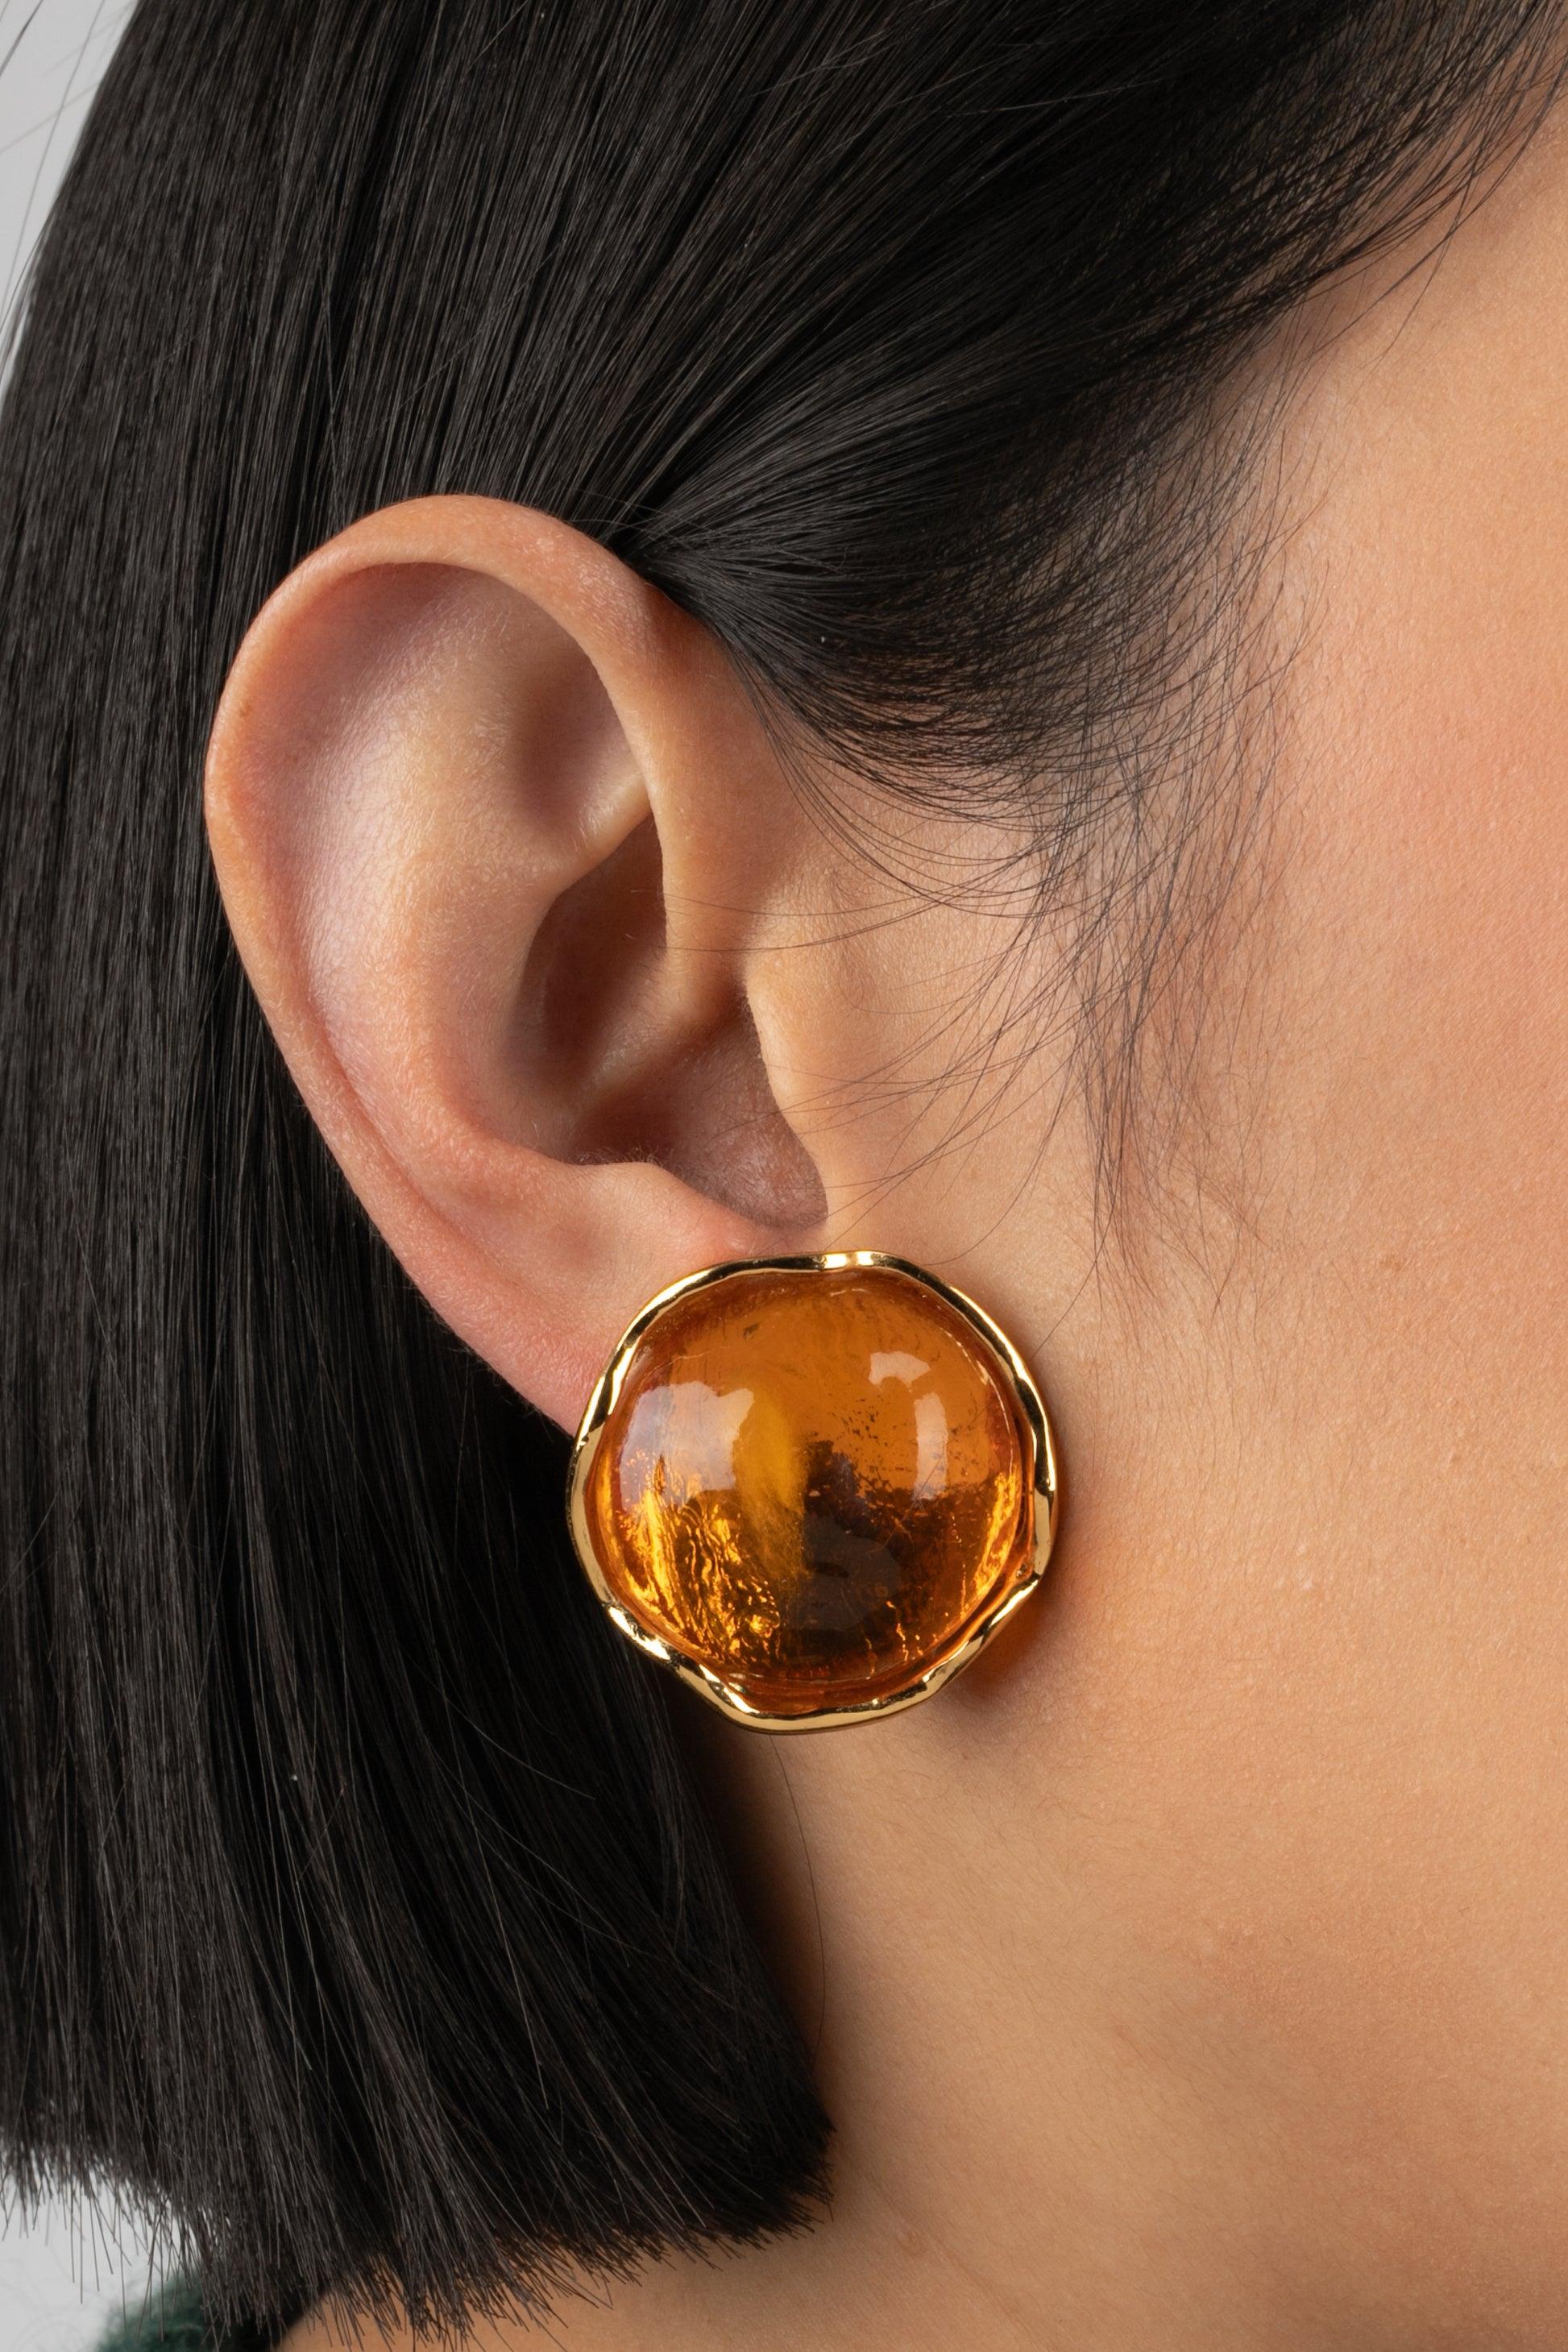 Yves Saint Laurent - (Made in France) Goldene Ohrringe aus Metall mit orangefarbenem Harz.

Zusätzliche Informationen:
Zustand: Sehr guter Zustand
Abmessungen: Höhe: 3 cm

Referenz des Sellers: BO167
